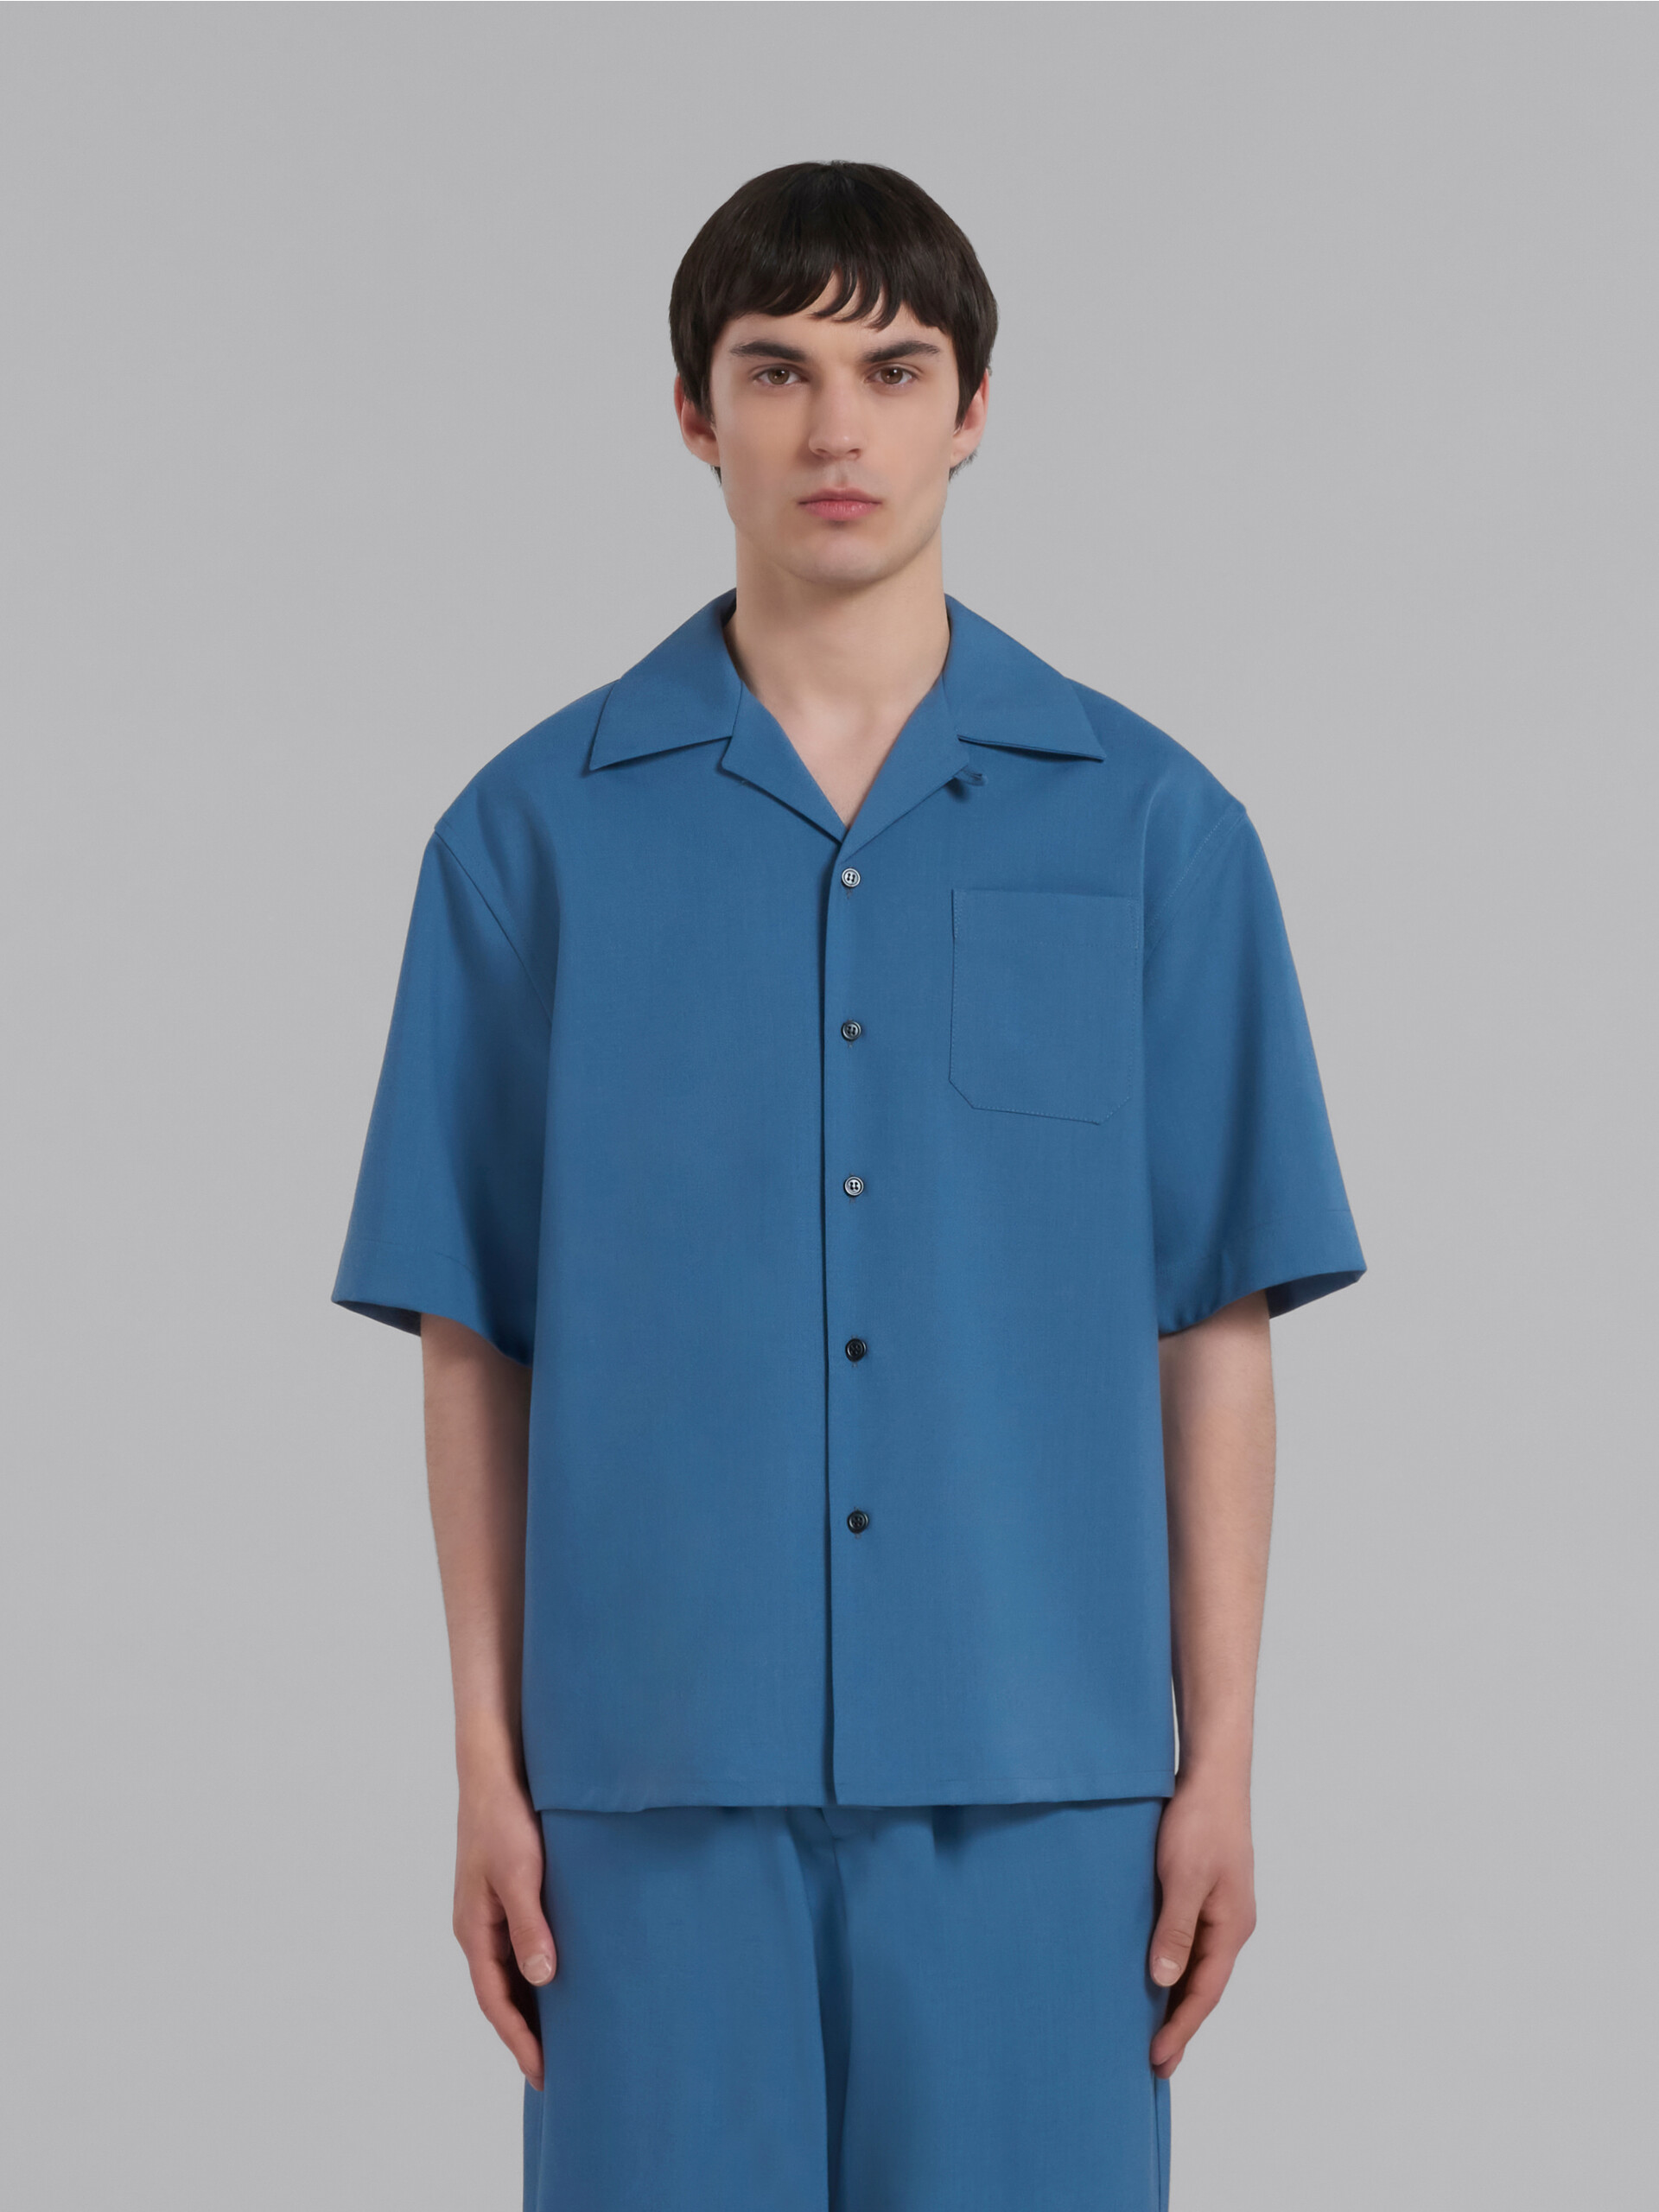 Camicia bowling azzurra in fresco di lana - Camicie - Image 2